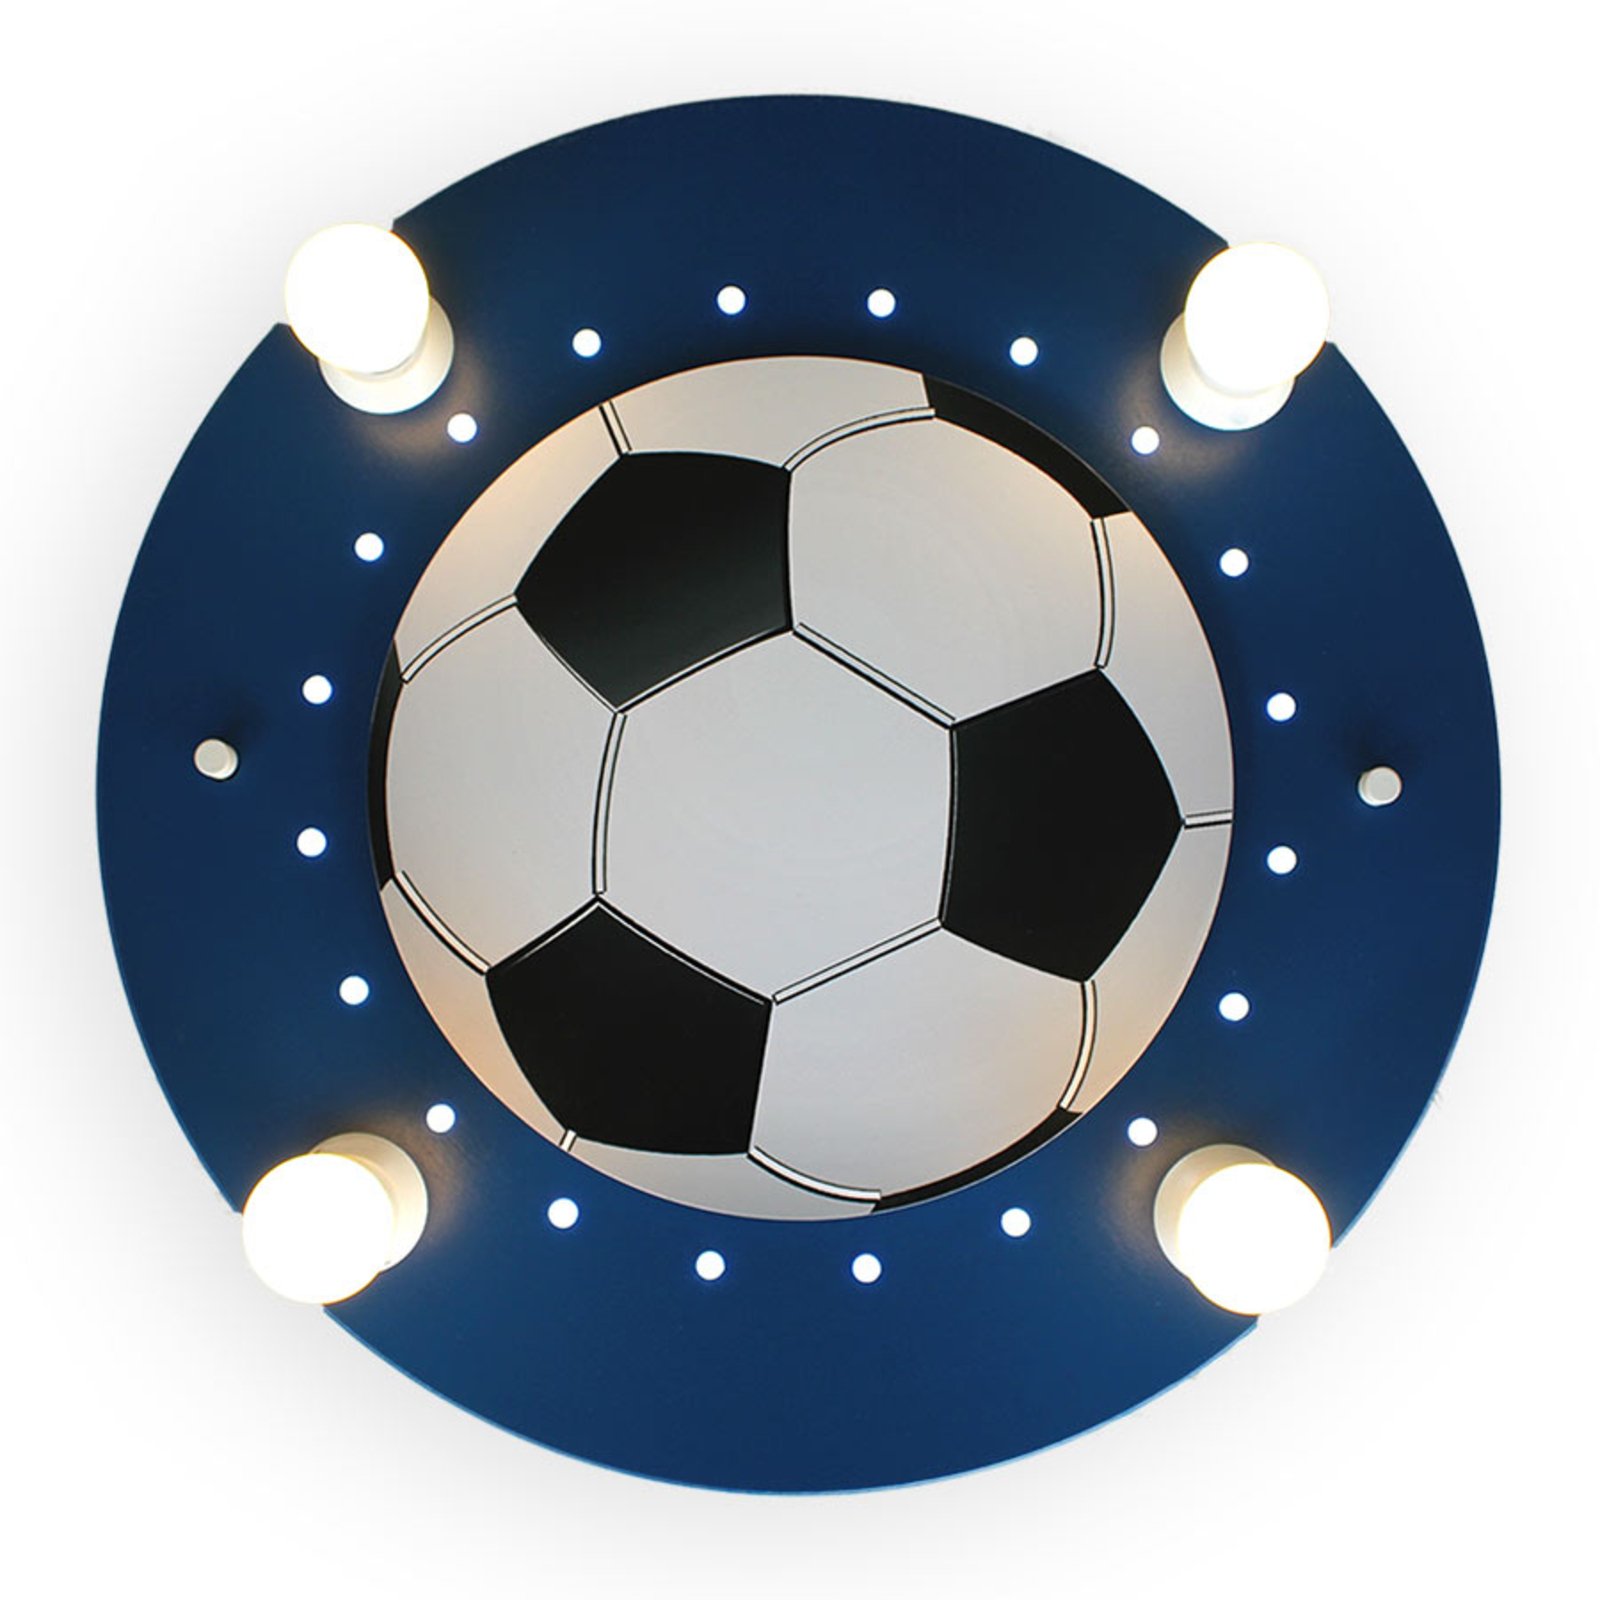 Lampa sufitowa Piłka nożna, 4-pkt. niebiesko-biała